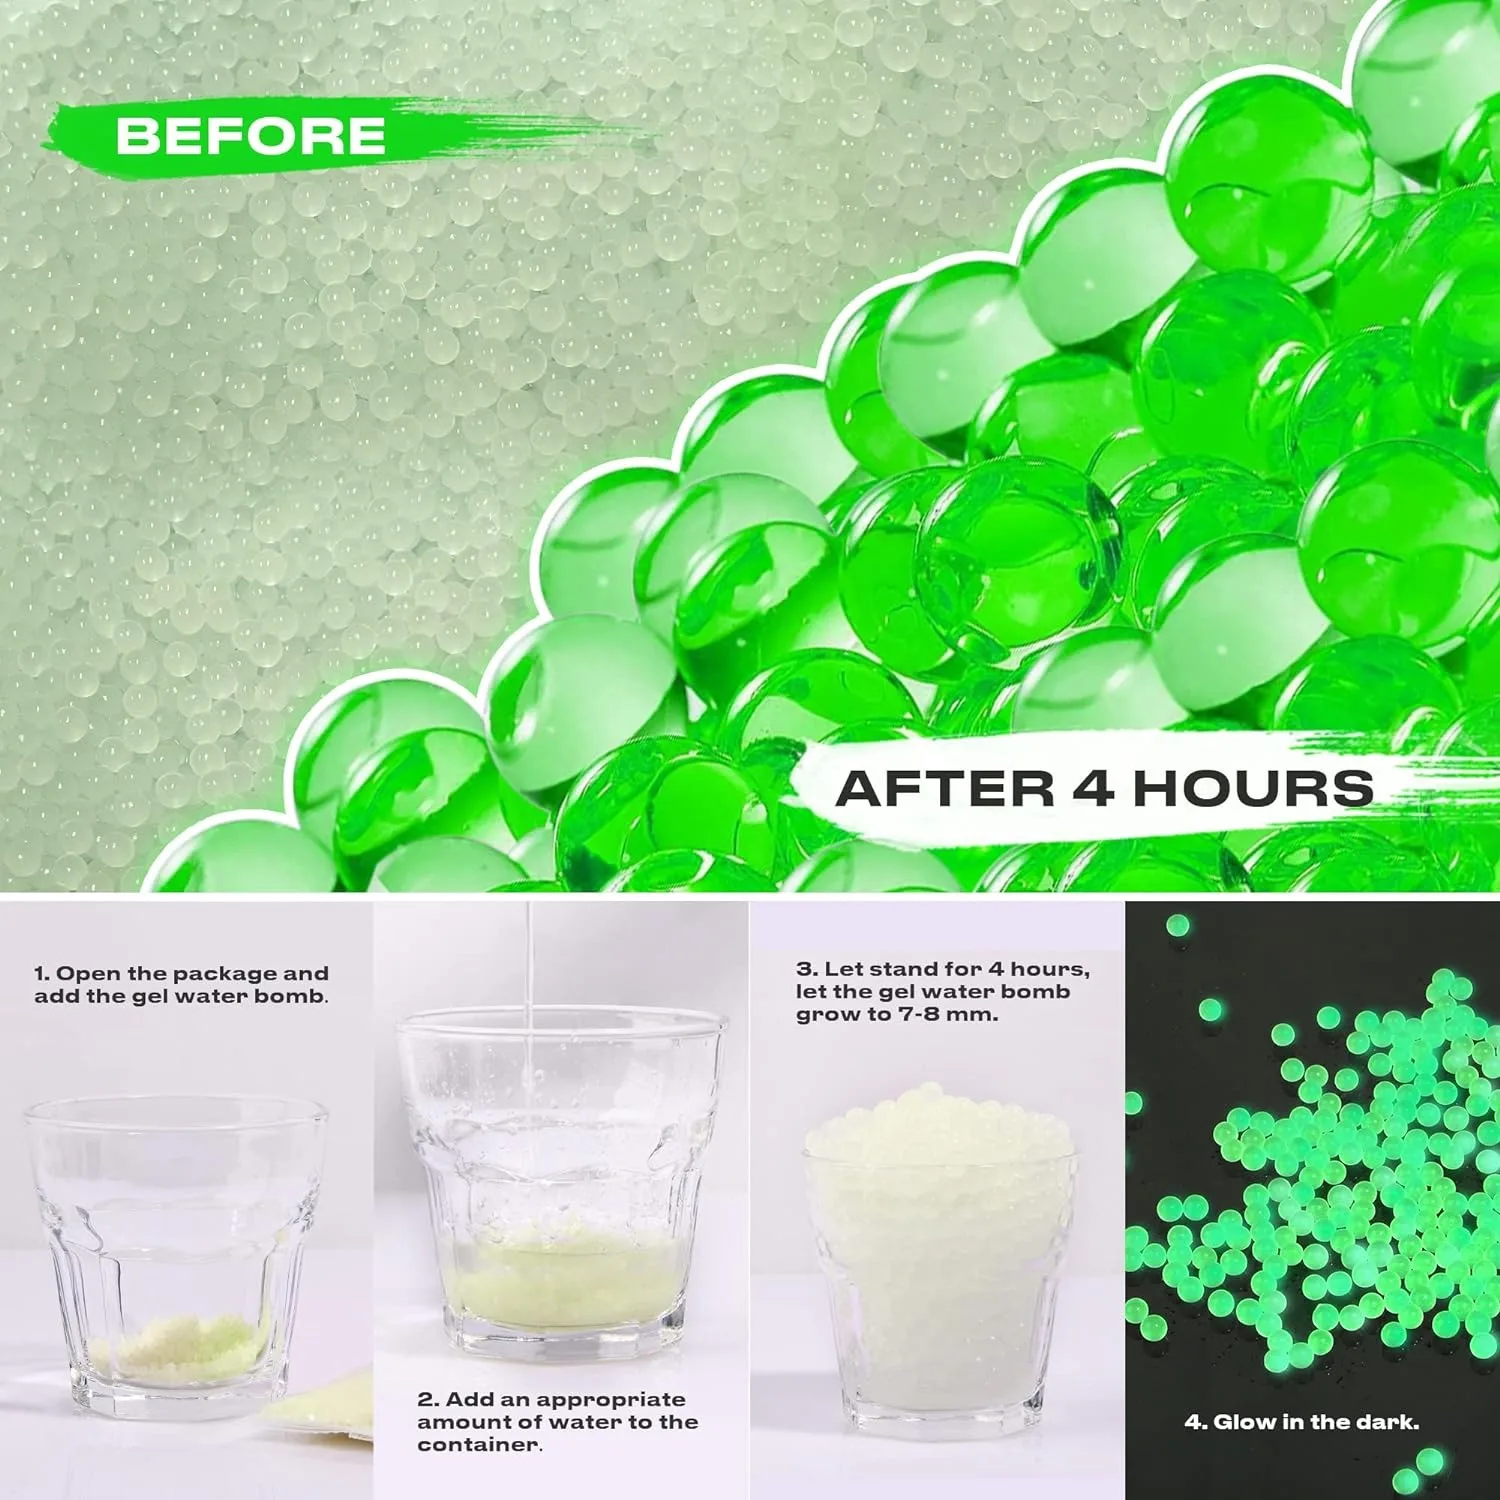 Ikfor-Recharge de perles d'eau phosphorescentes, gel de recharge Shoous, éclaboussures de balles Bl84, 7-8mm, 4 paquets